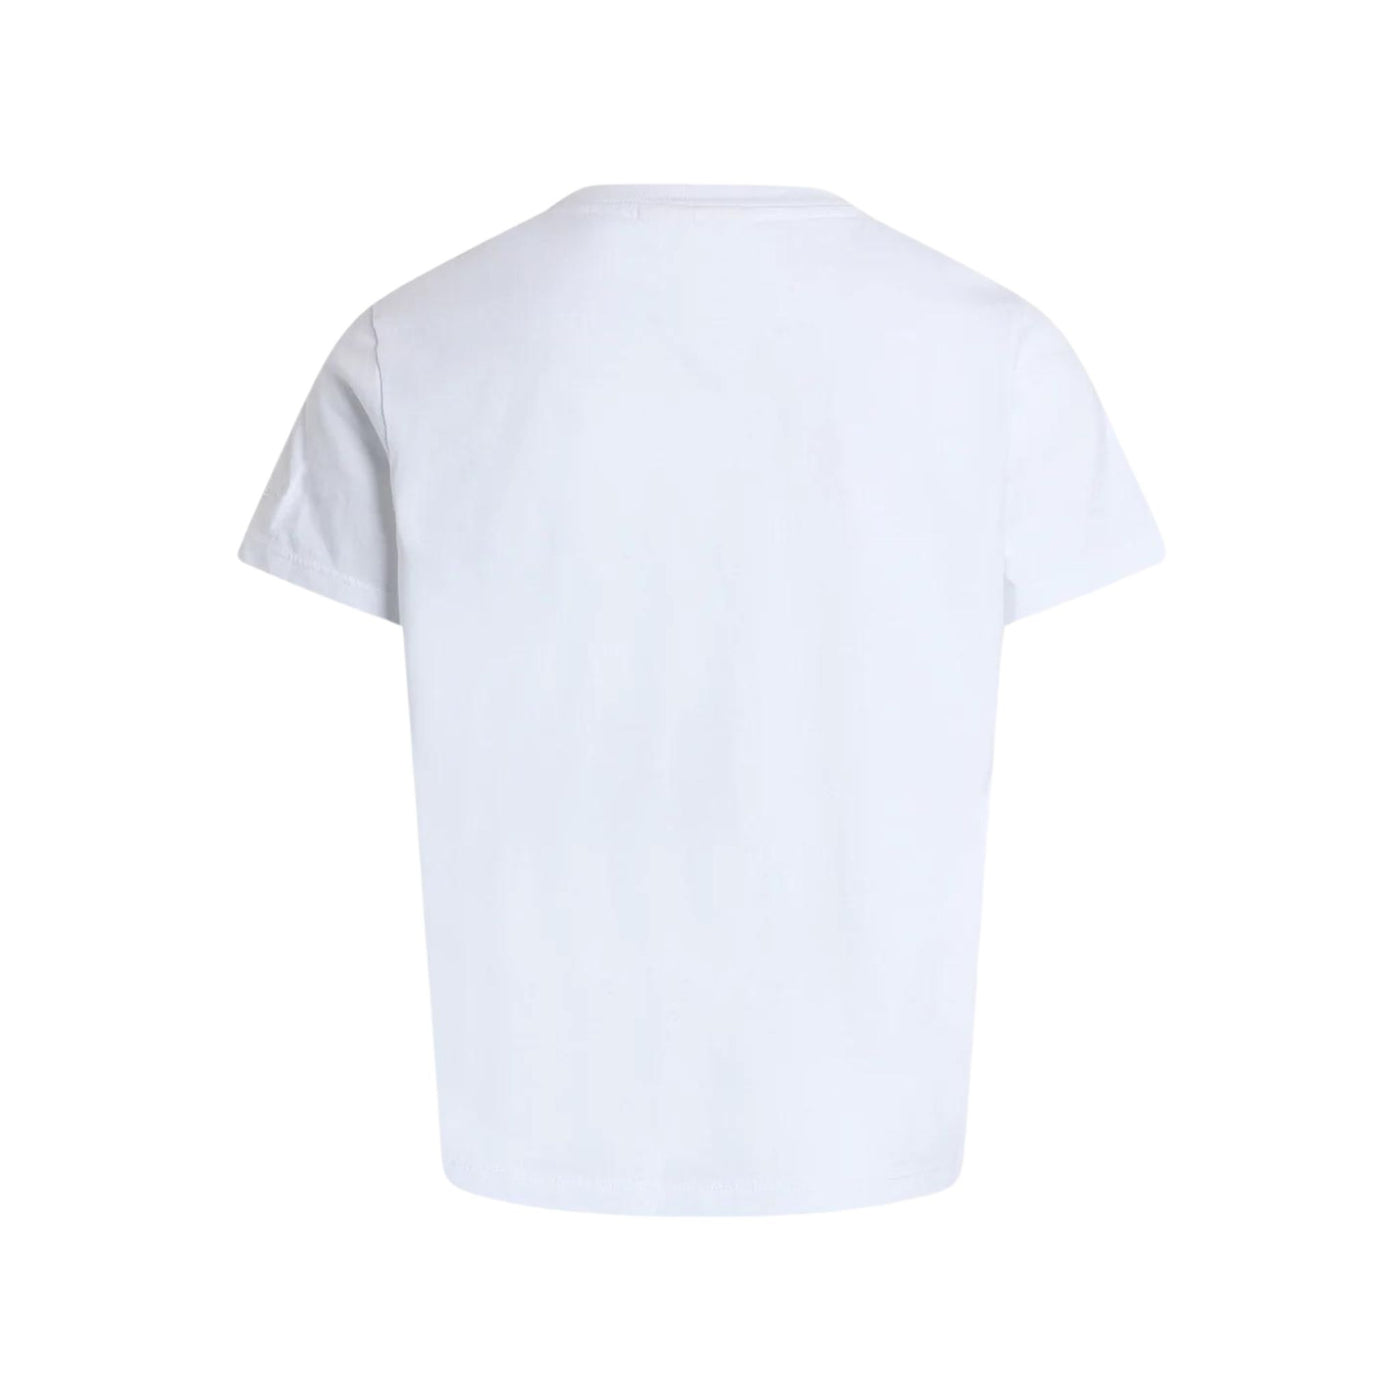 T-shirt Bambina in cotone, dal design classico, a maniche corte